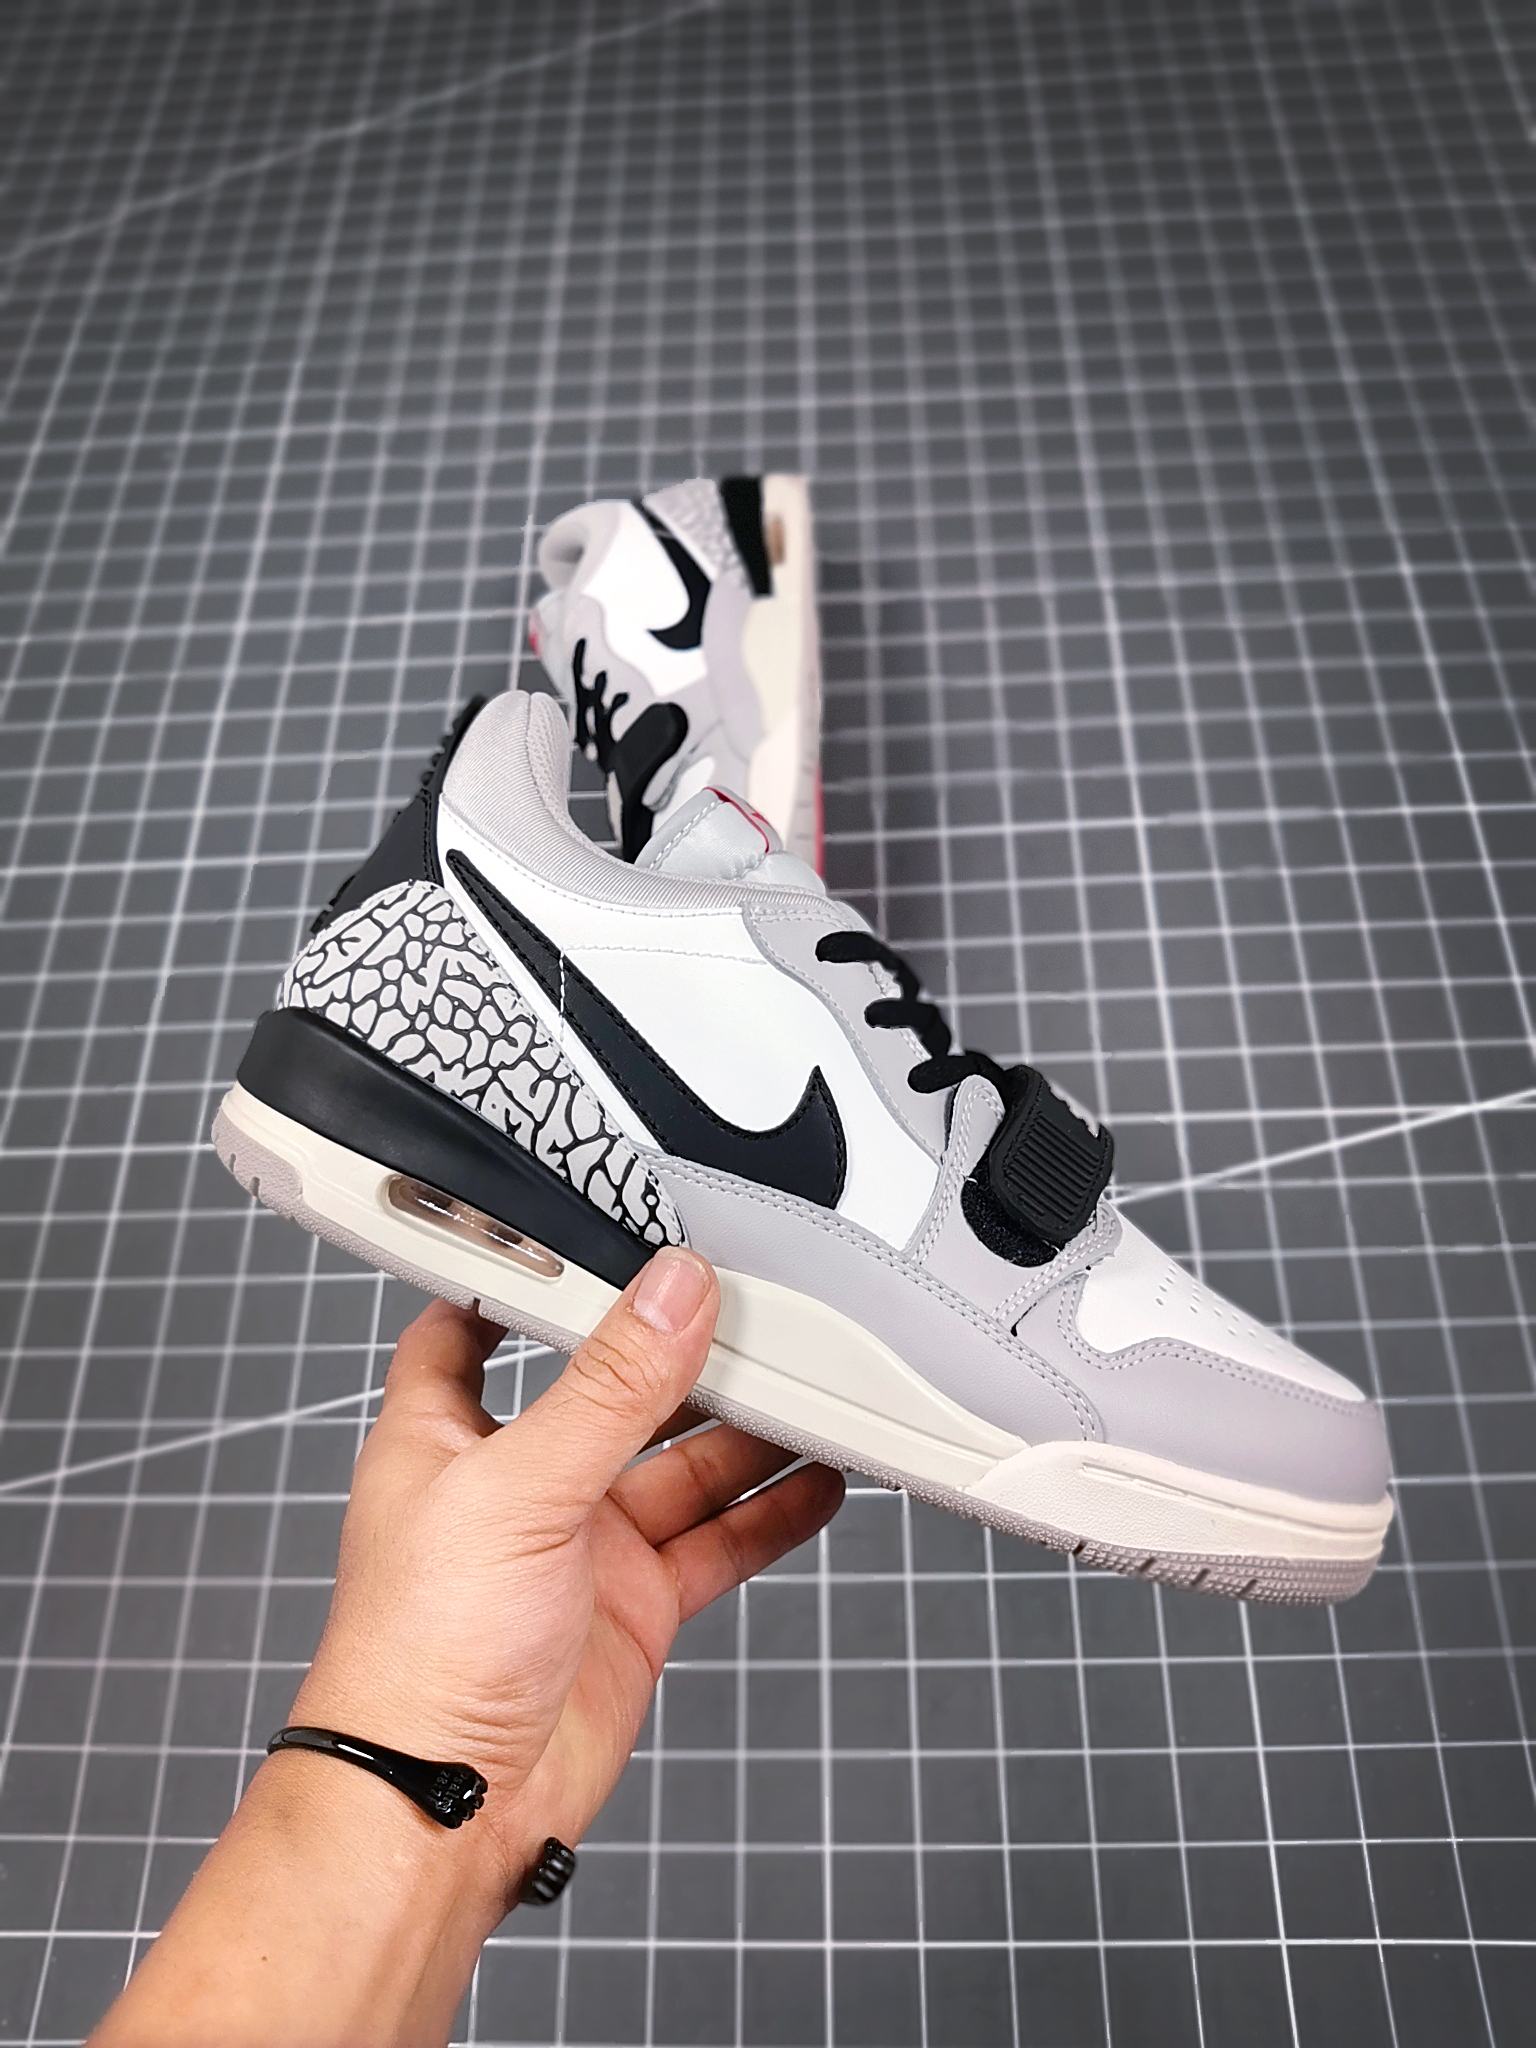 2021 Jordan Legacy 312 Low White Cement Grey Black Shoes